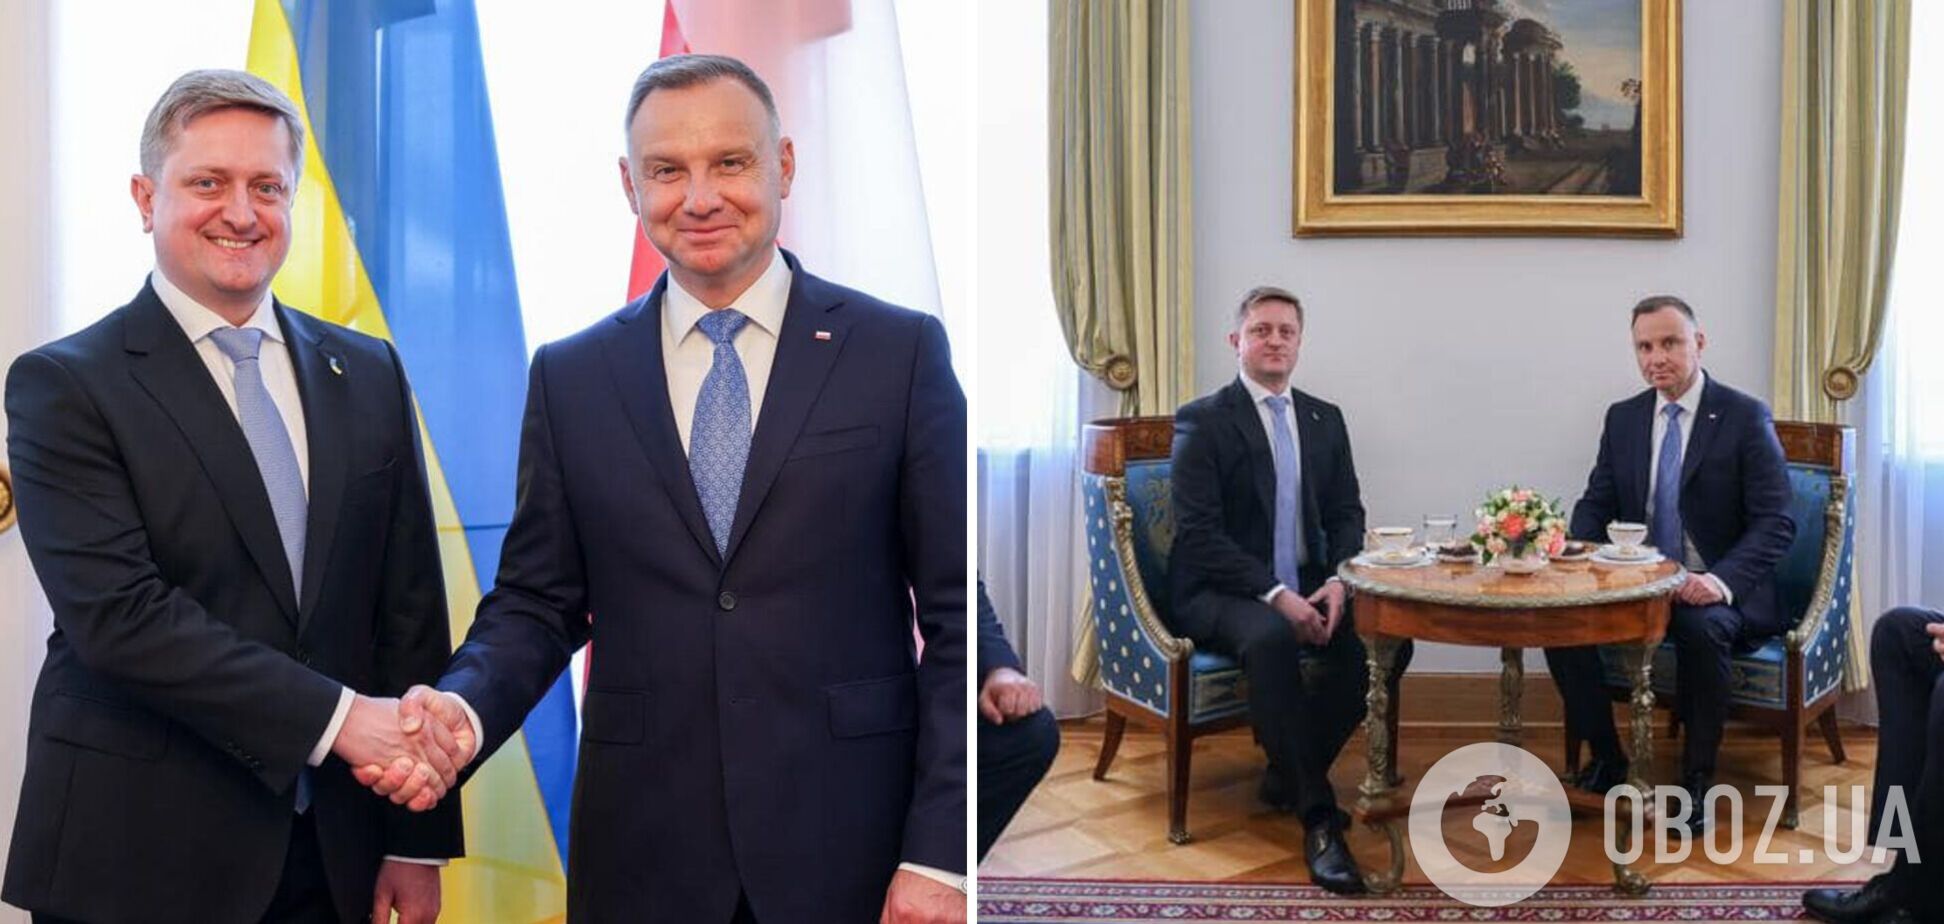 Новий посол України в Польщі Зварич вручив президентові Дуді вірчі грамоти. Фото